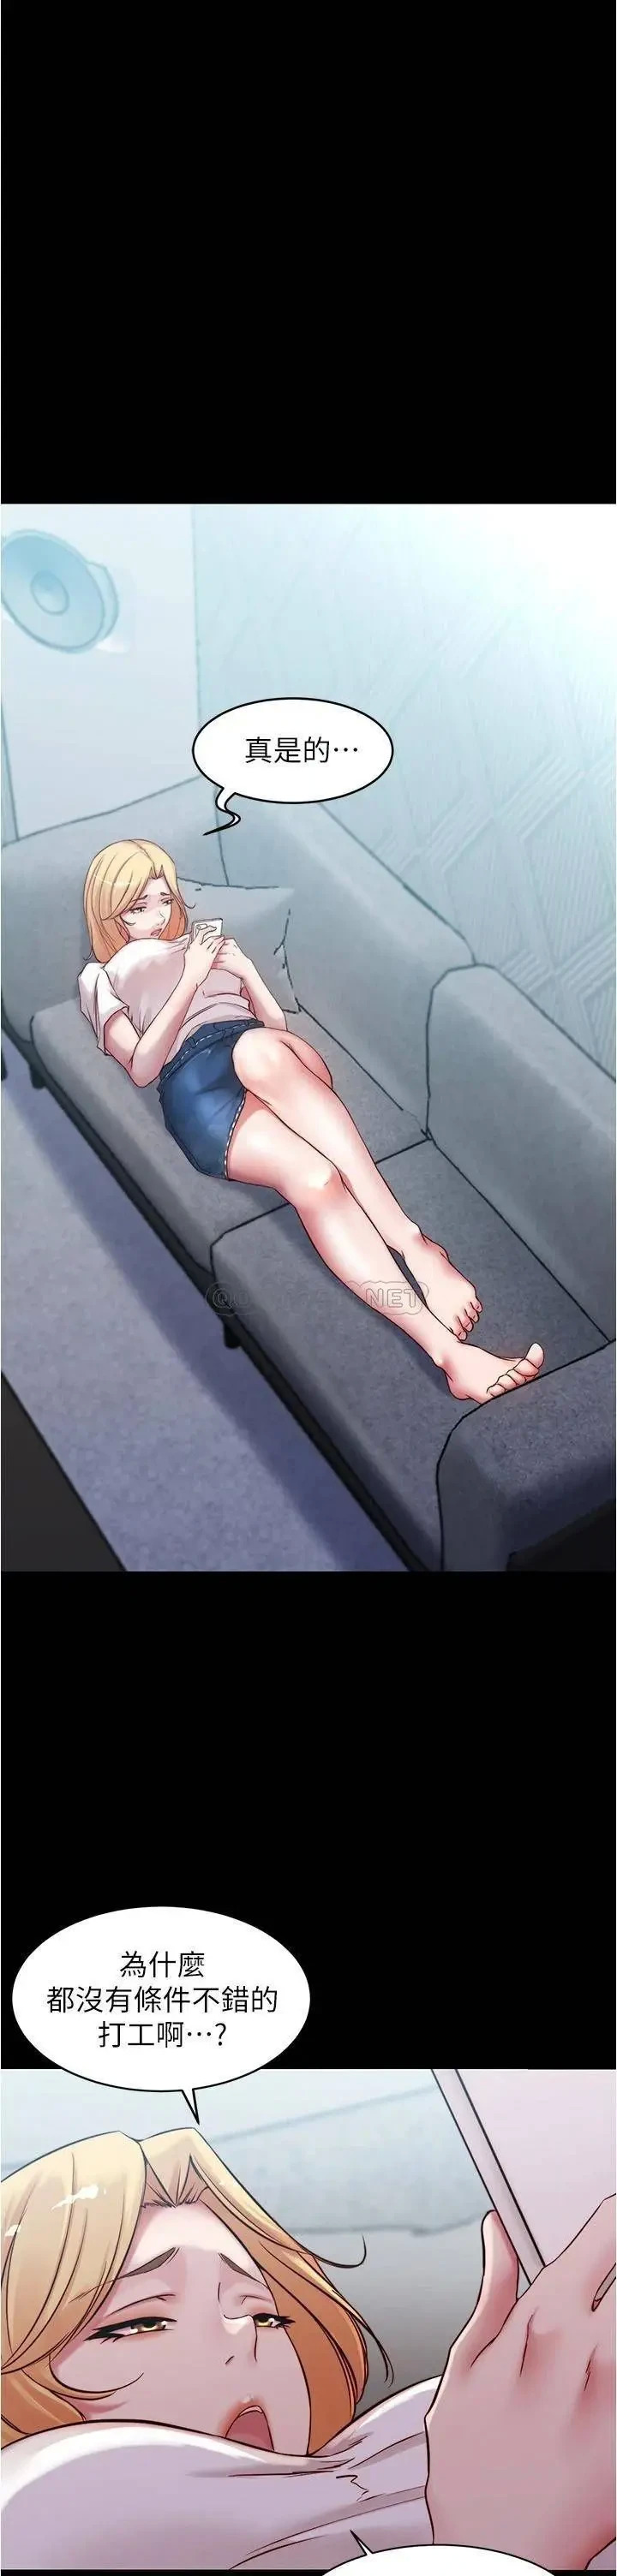 《小裤裤笔记》漫画 第43话 好想看张穗桦的裸体…!